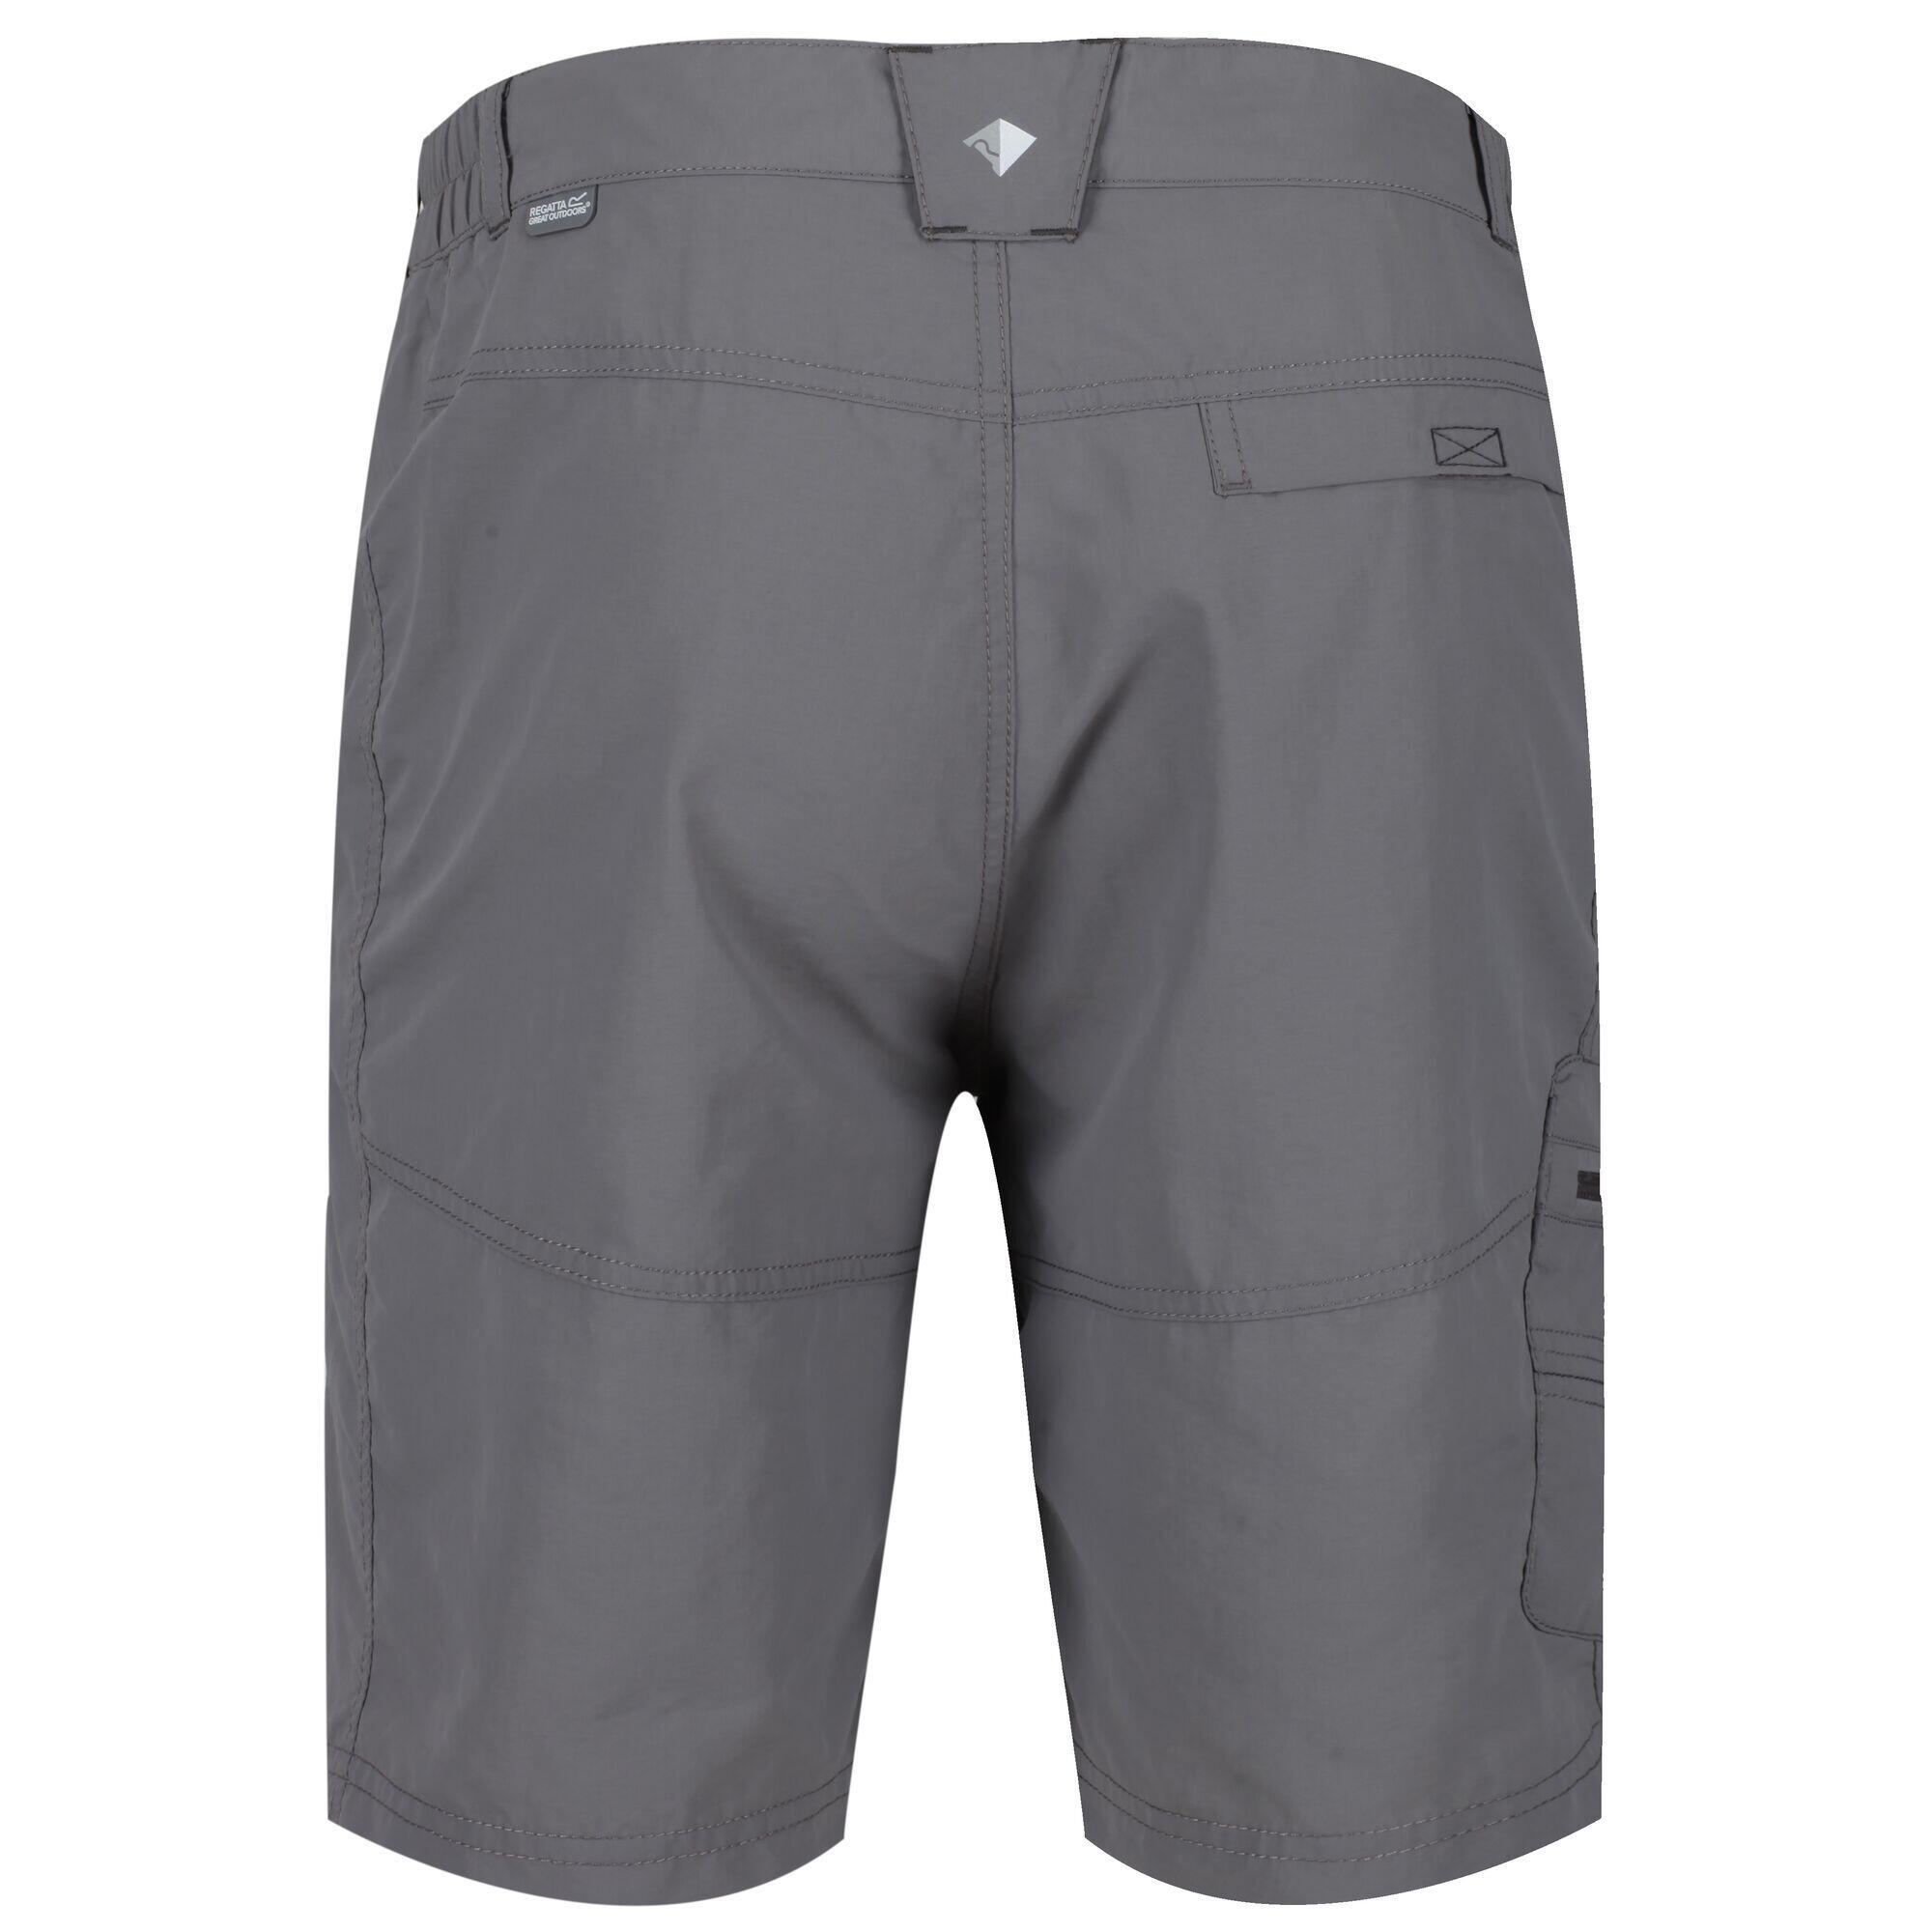 Leesville II Men's Hiking Shorts - Rock Grey 6/6